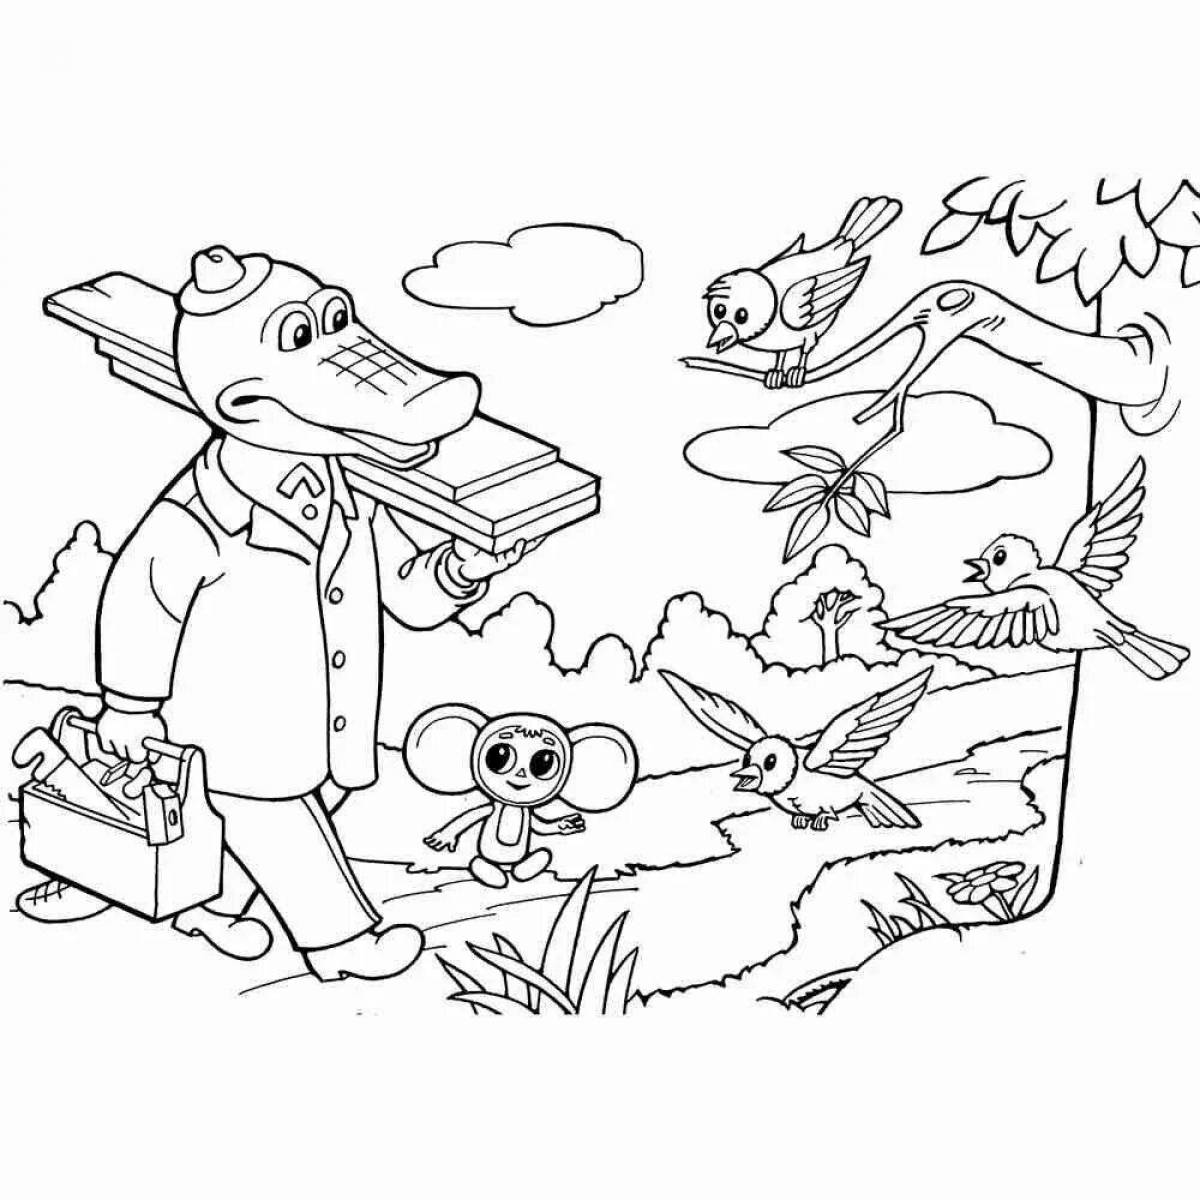 Cheburashka and crocodile #3